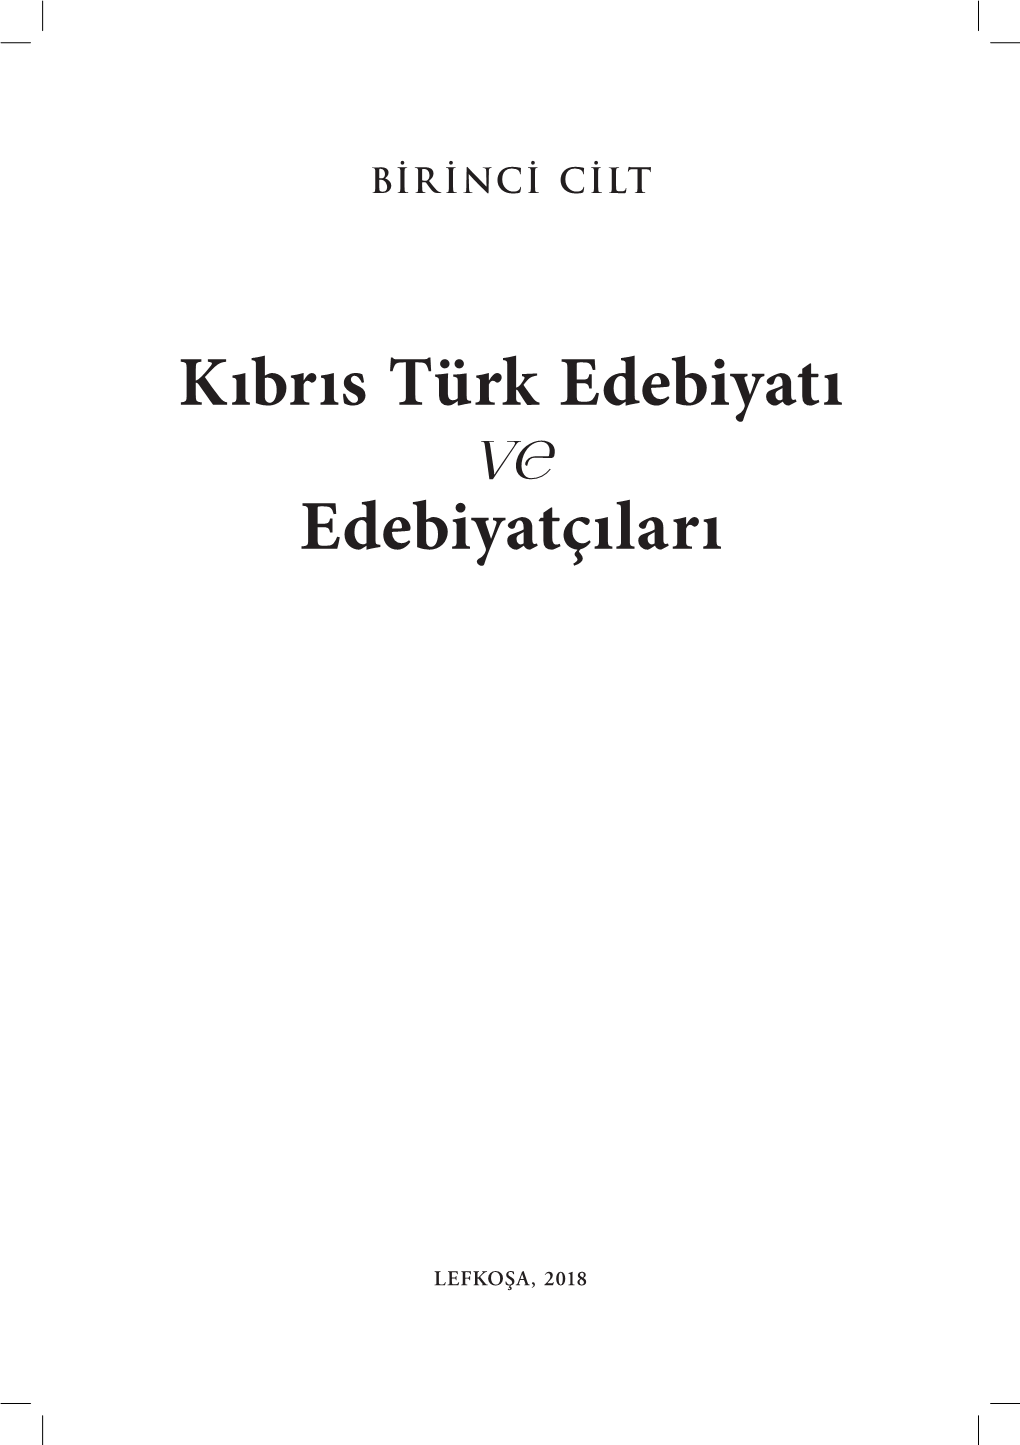 Kıbrıs Türk Edebiyatı Ve Edebiyatçıları